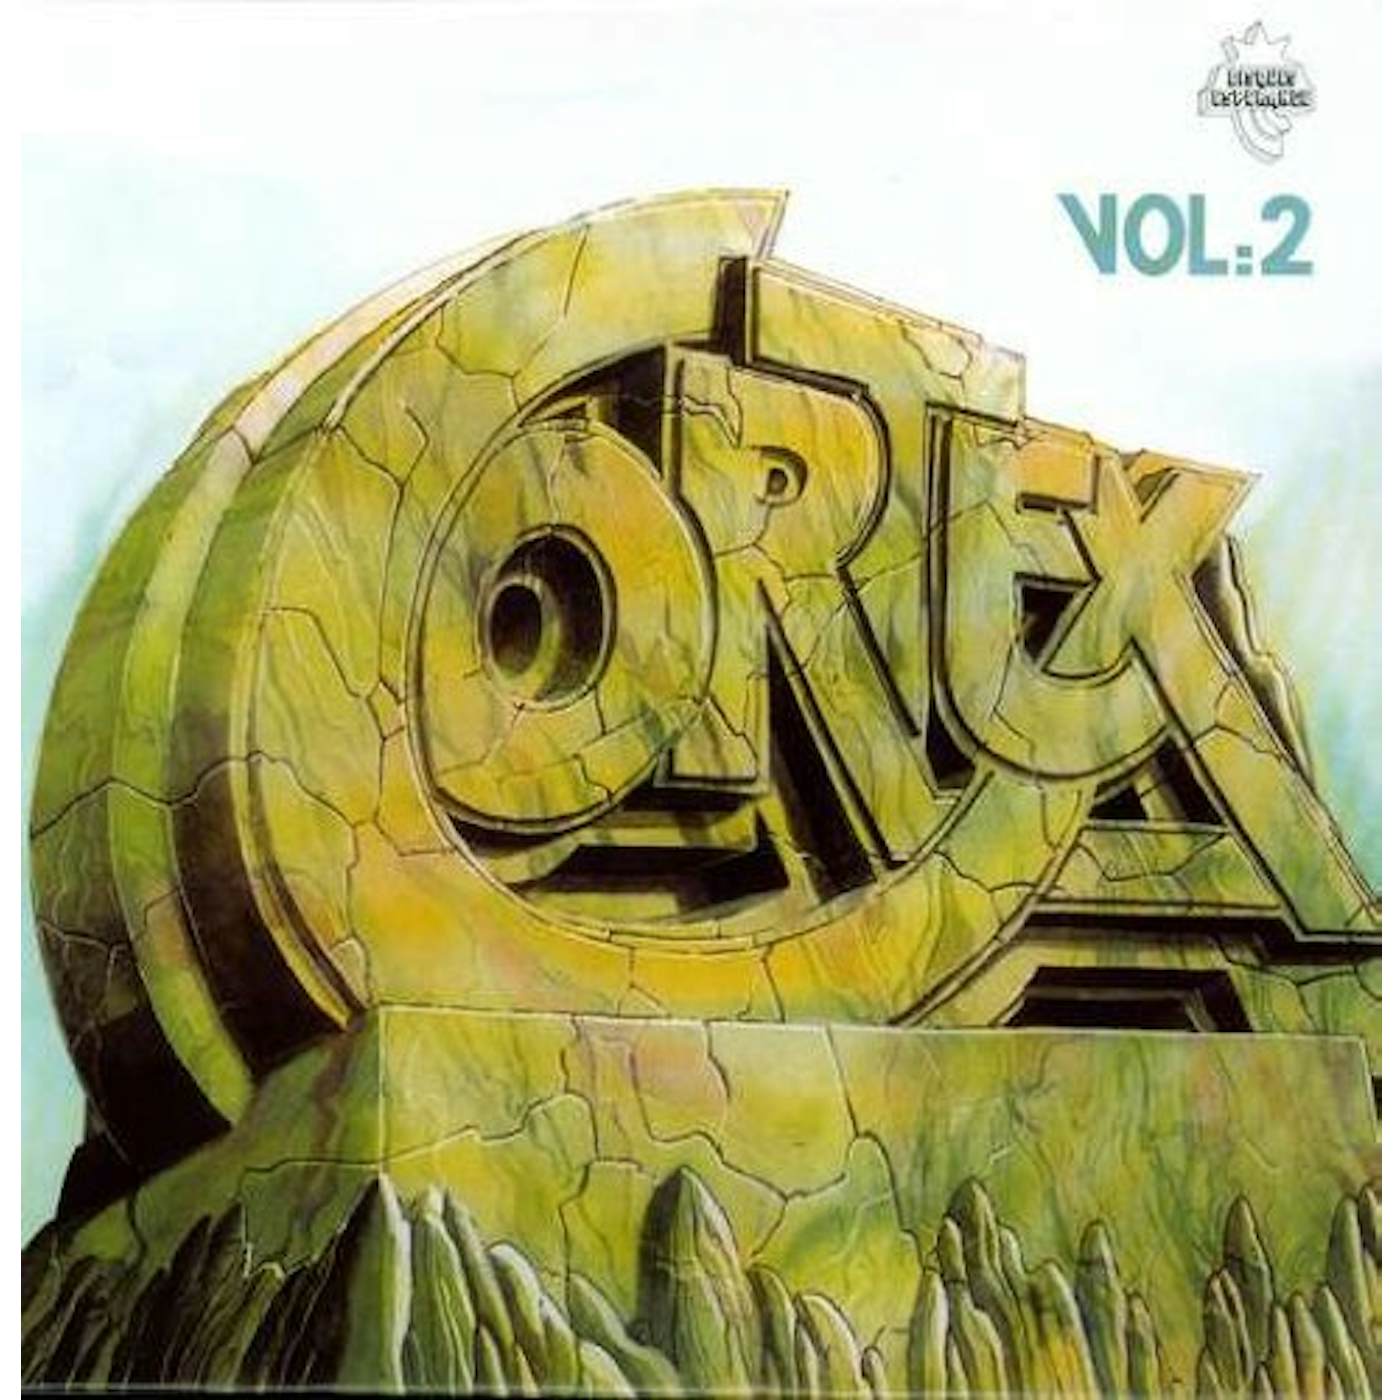 Cortex VOLUME 2 Vinyl Record